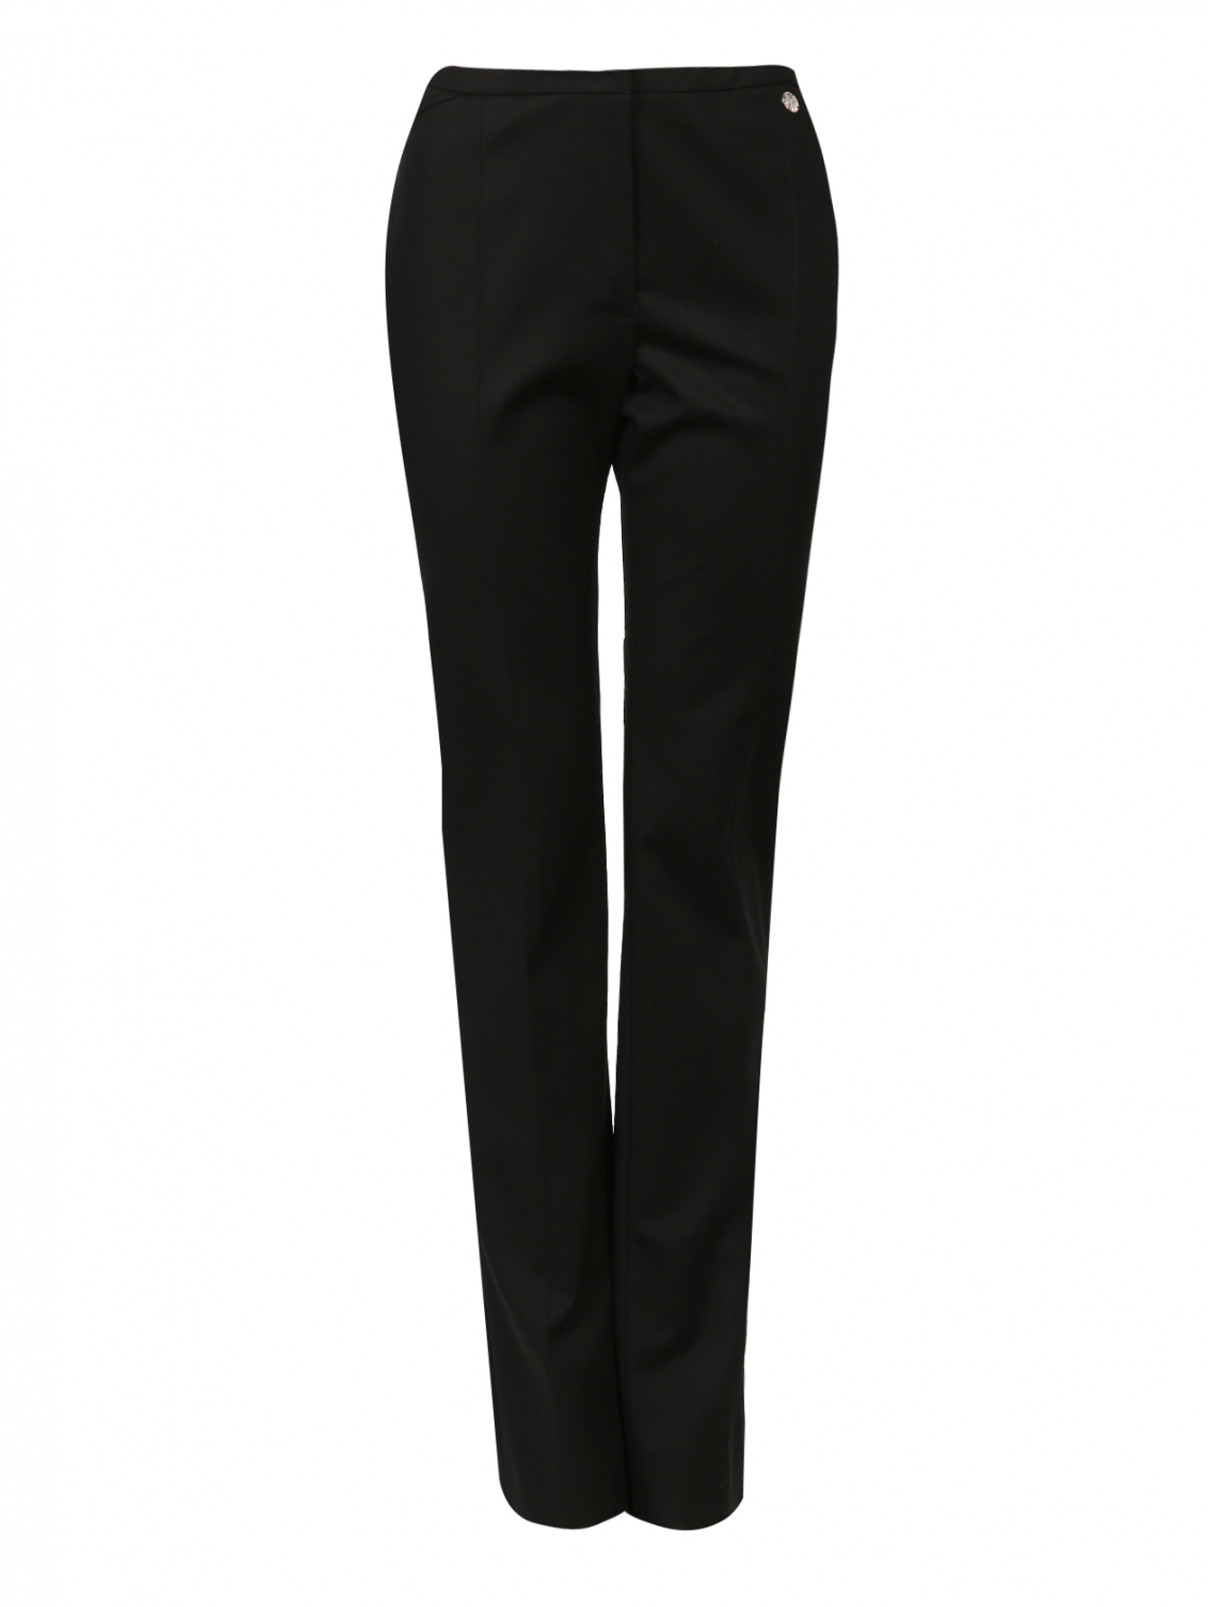 Прямые брюки из хлопка со стрелками Versace Collection  –  Общий вид  – Цвет:  Черный